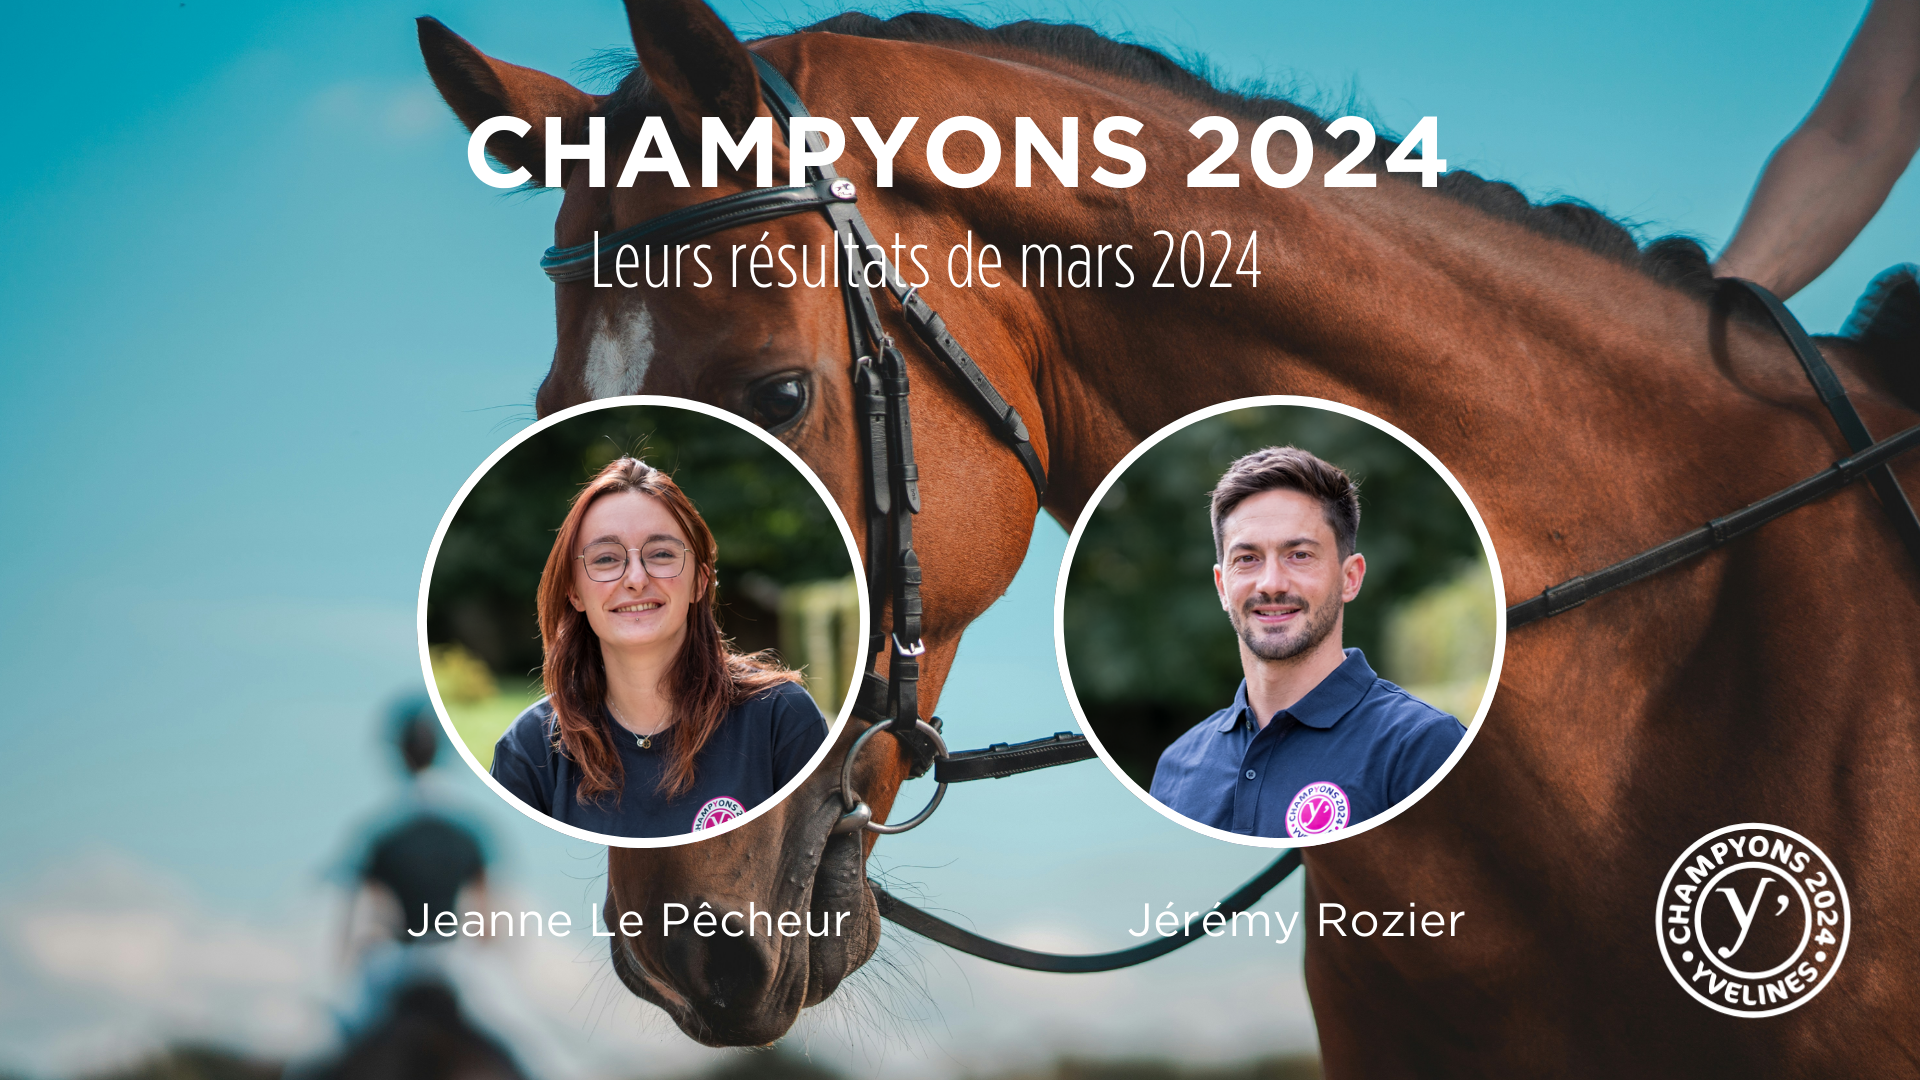 Découvrez les résultats de mars 2024 des ChampYons soutenus par le Département des Yvelines !